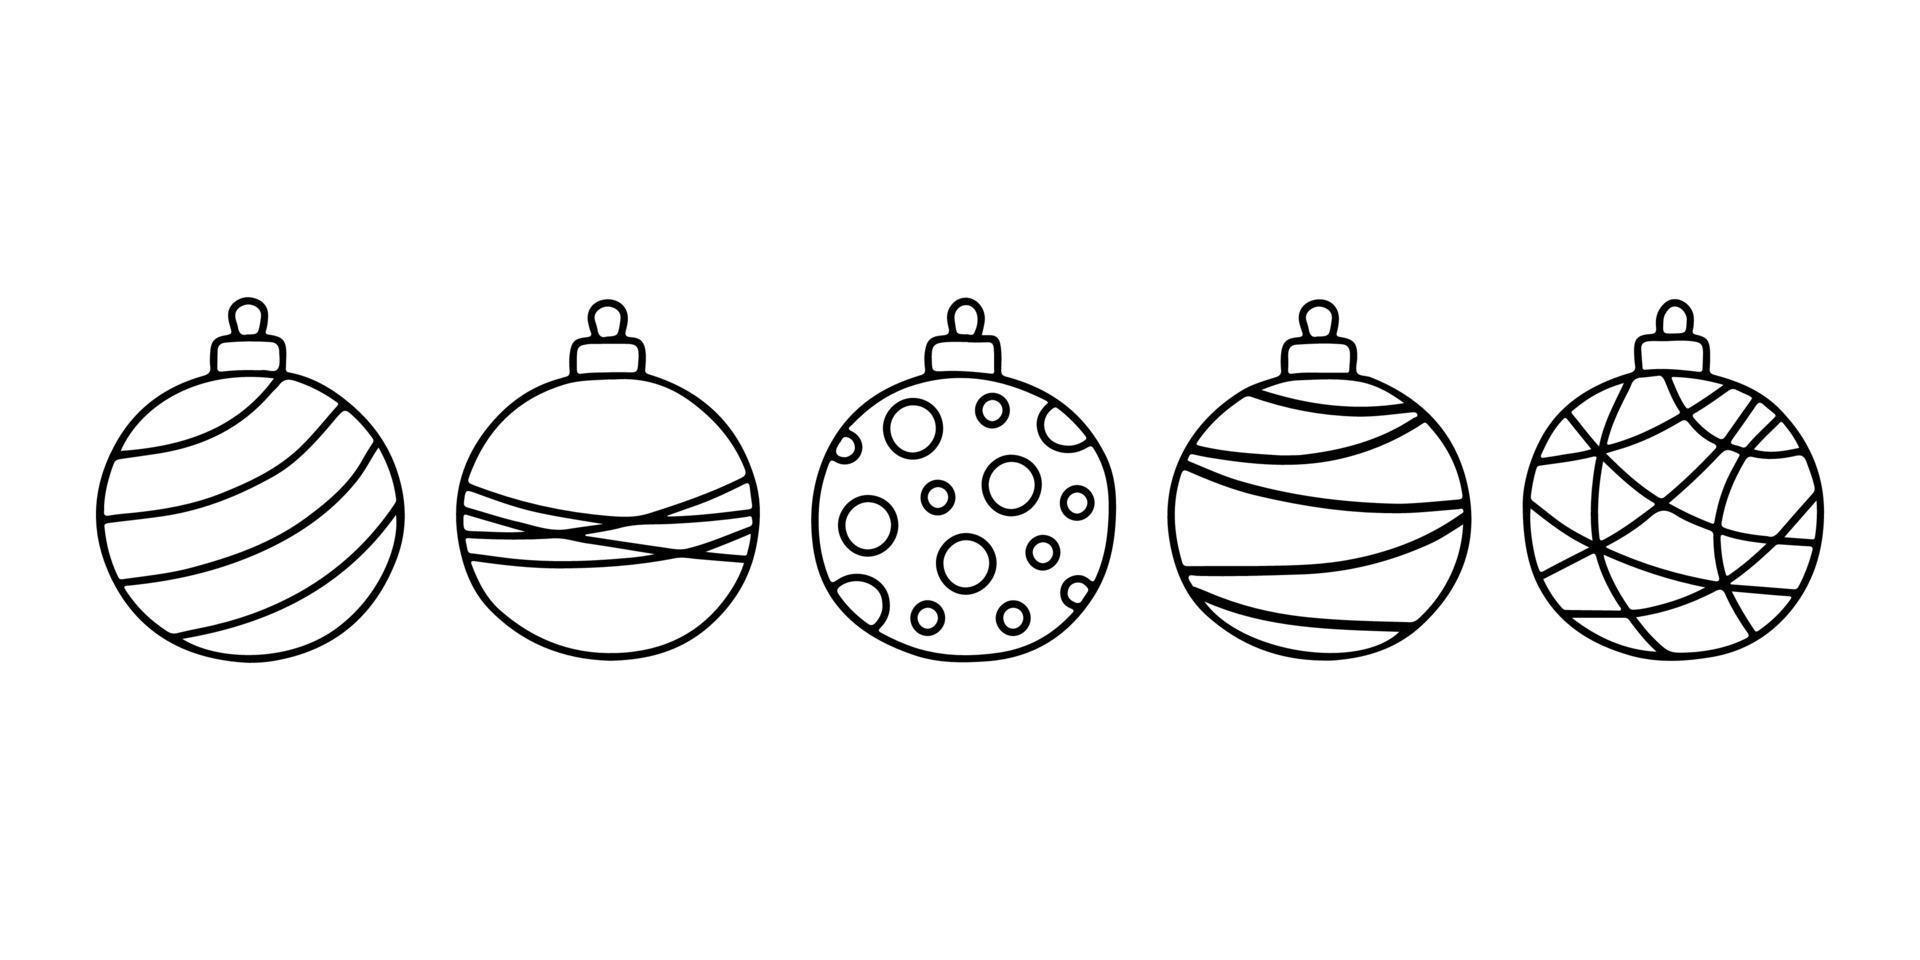 verschiedene kreisweihnachtskugel mit verzierung, gekritzelform, handzeichnungslinienskizze. Spielzeug für Weihnachtsbaum-Set. Vektor-Illustration vektor